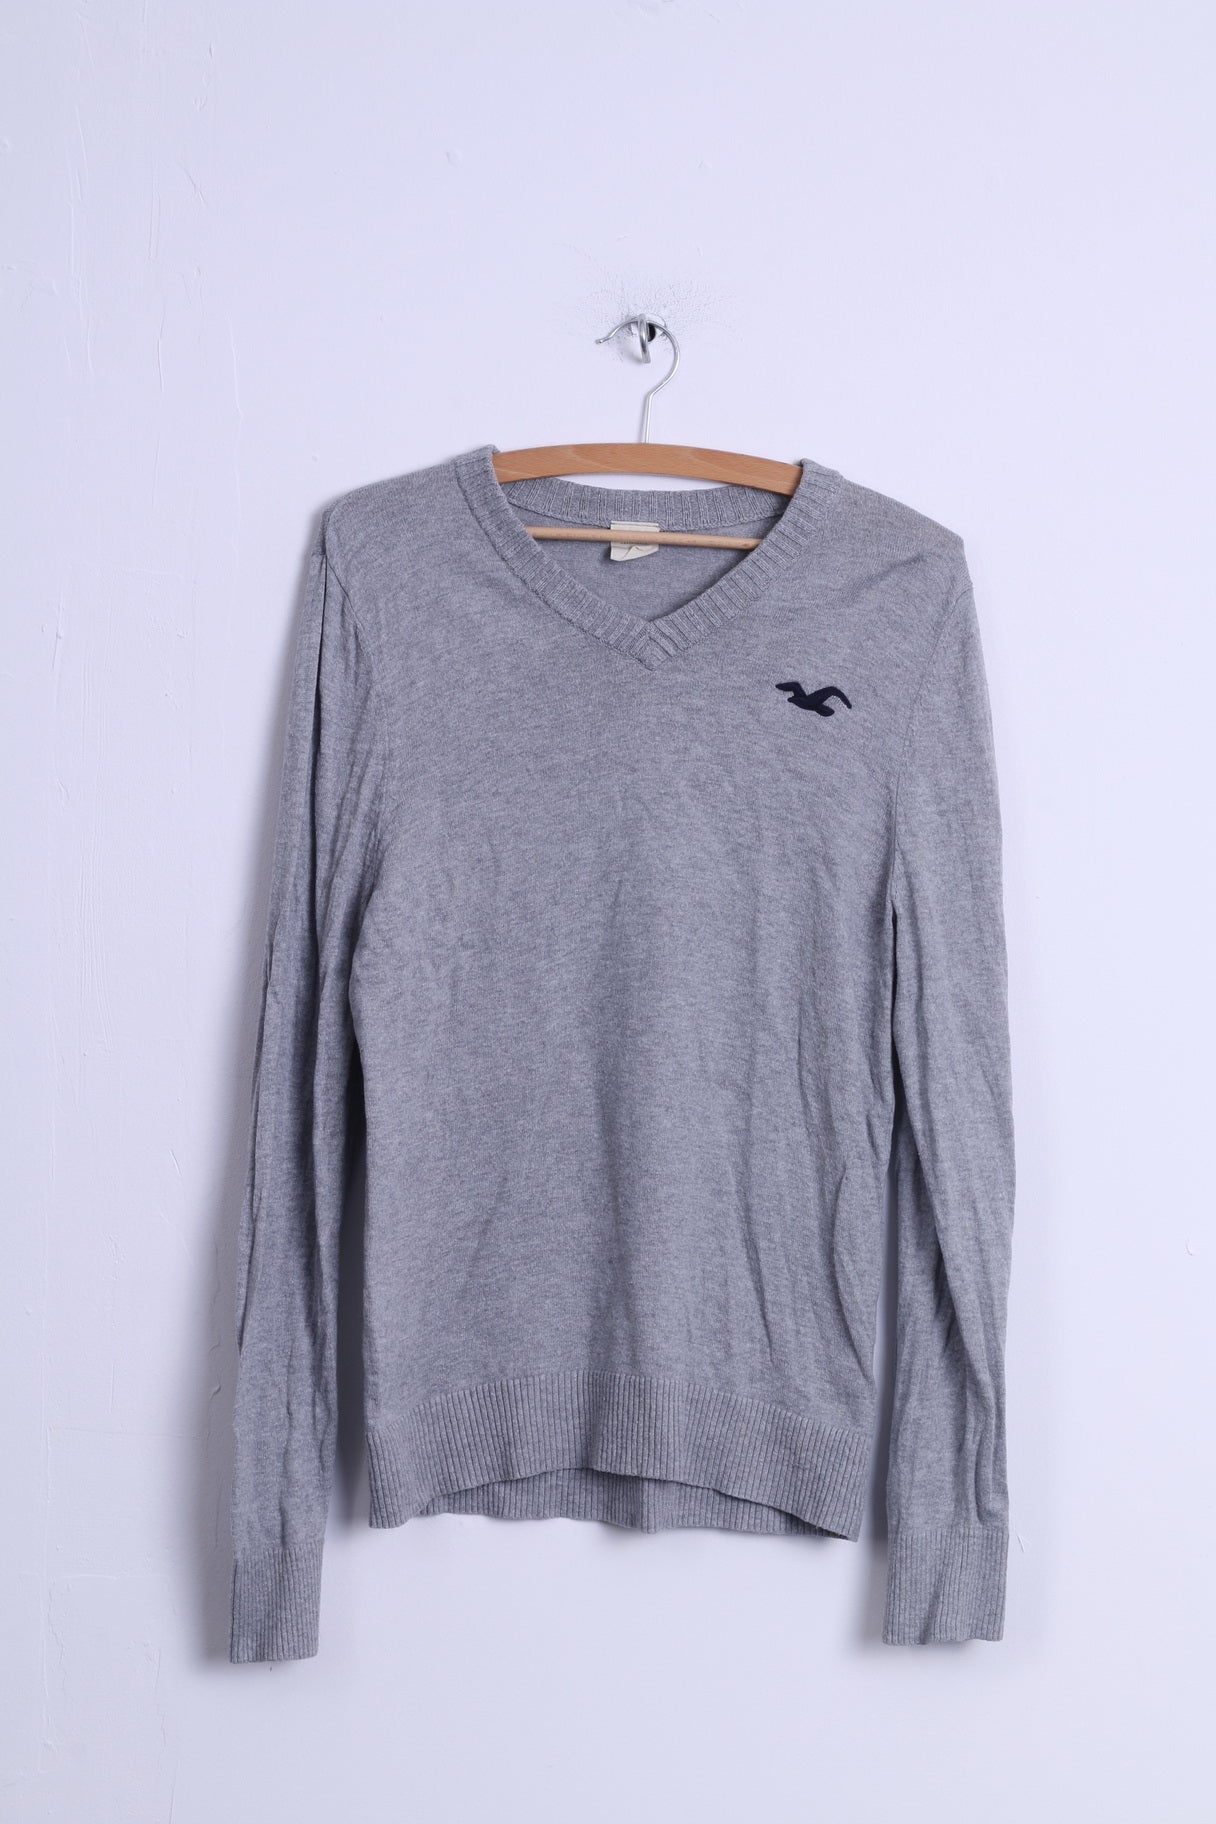 Hollister Mens L (S) Jumper Grey Cotton V Neck Light Fit Sweater